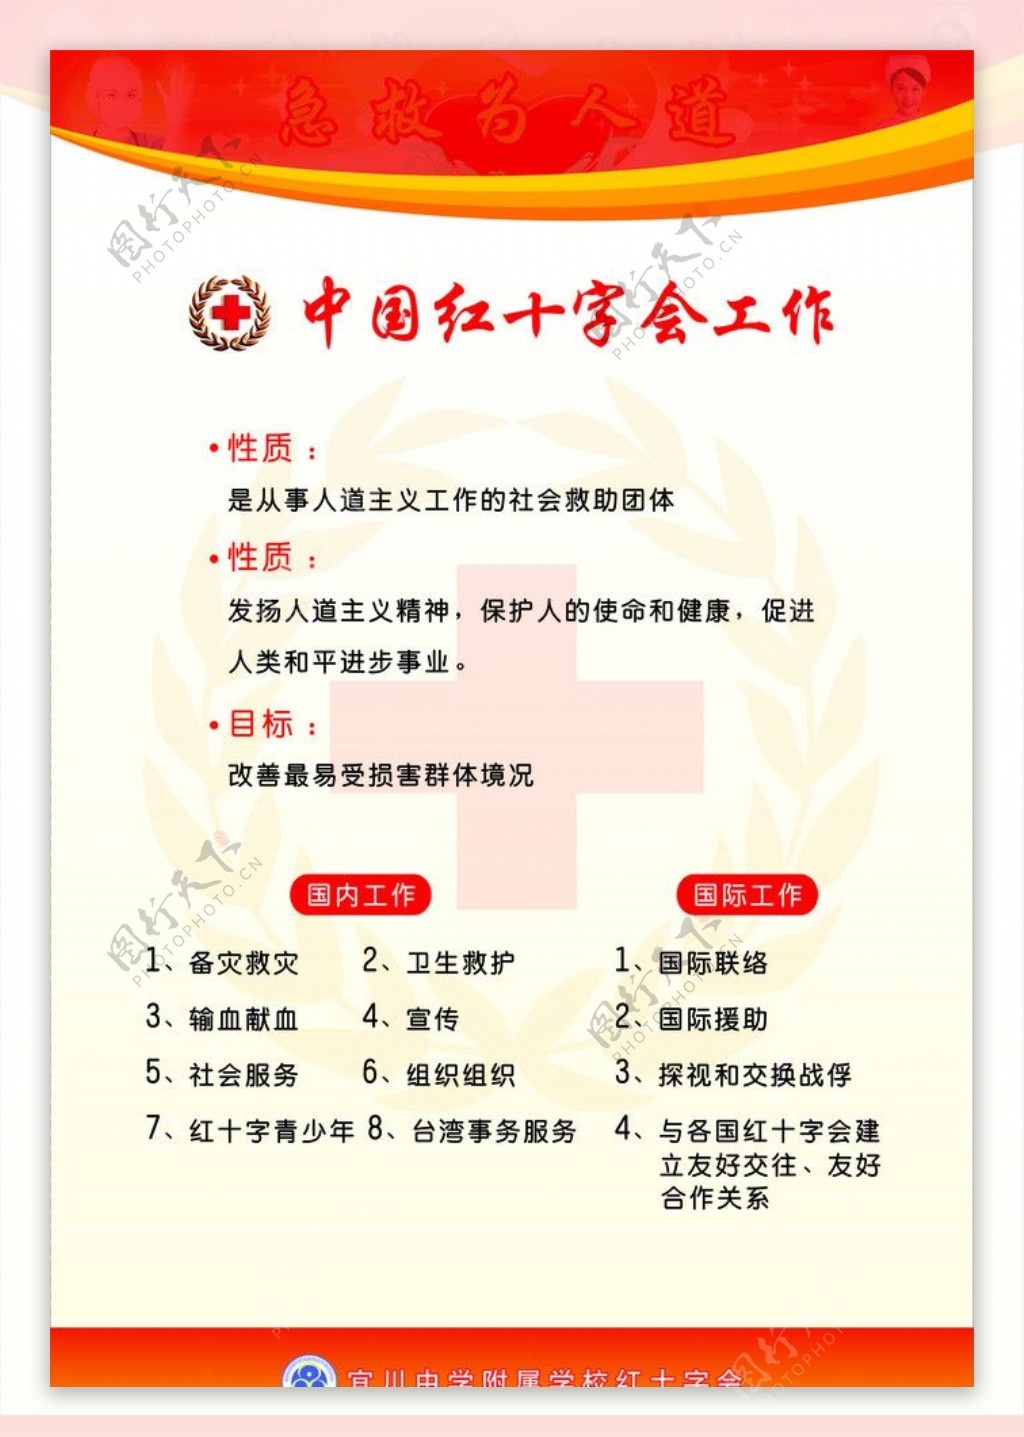 中国红十字会工作图片